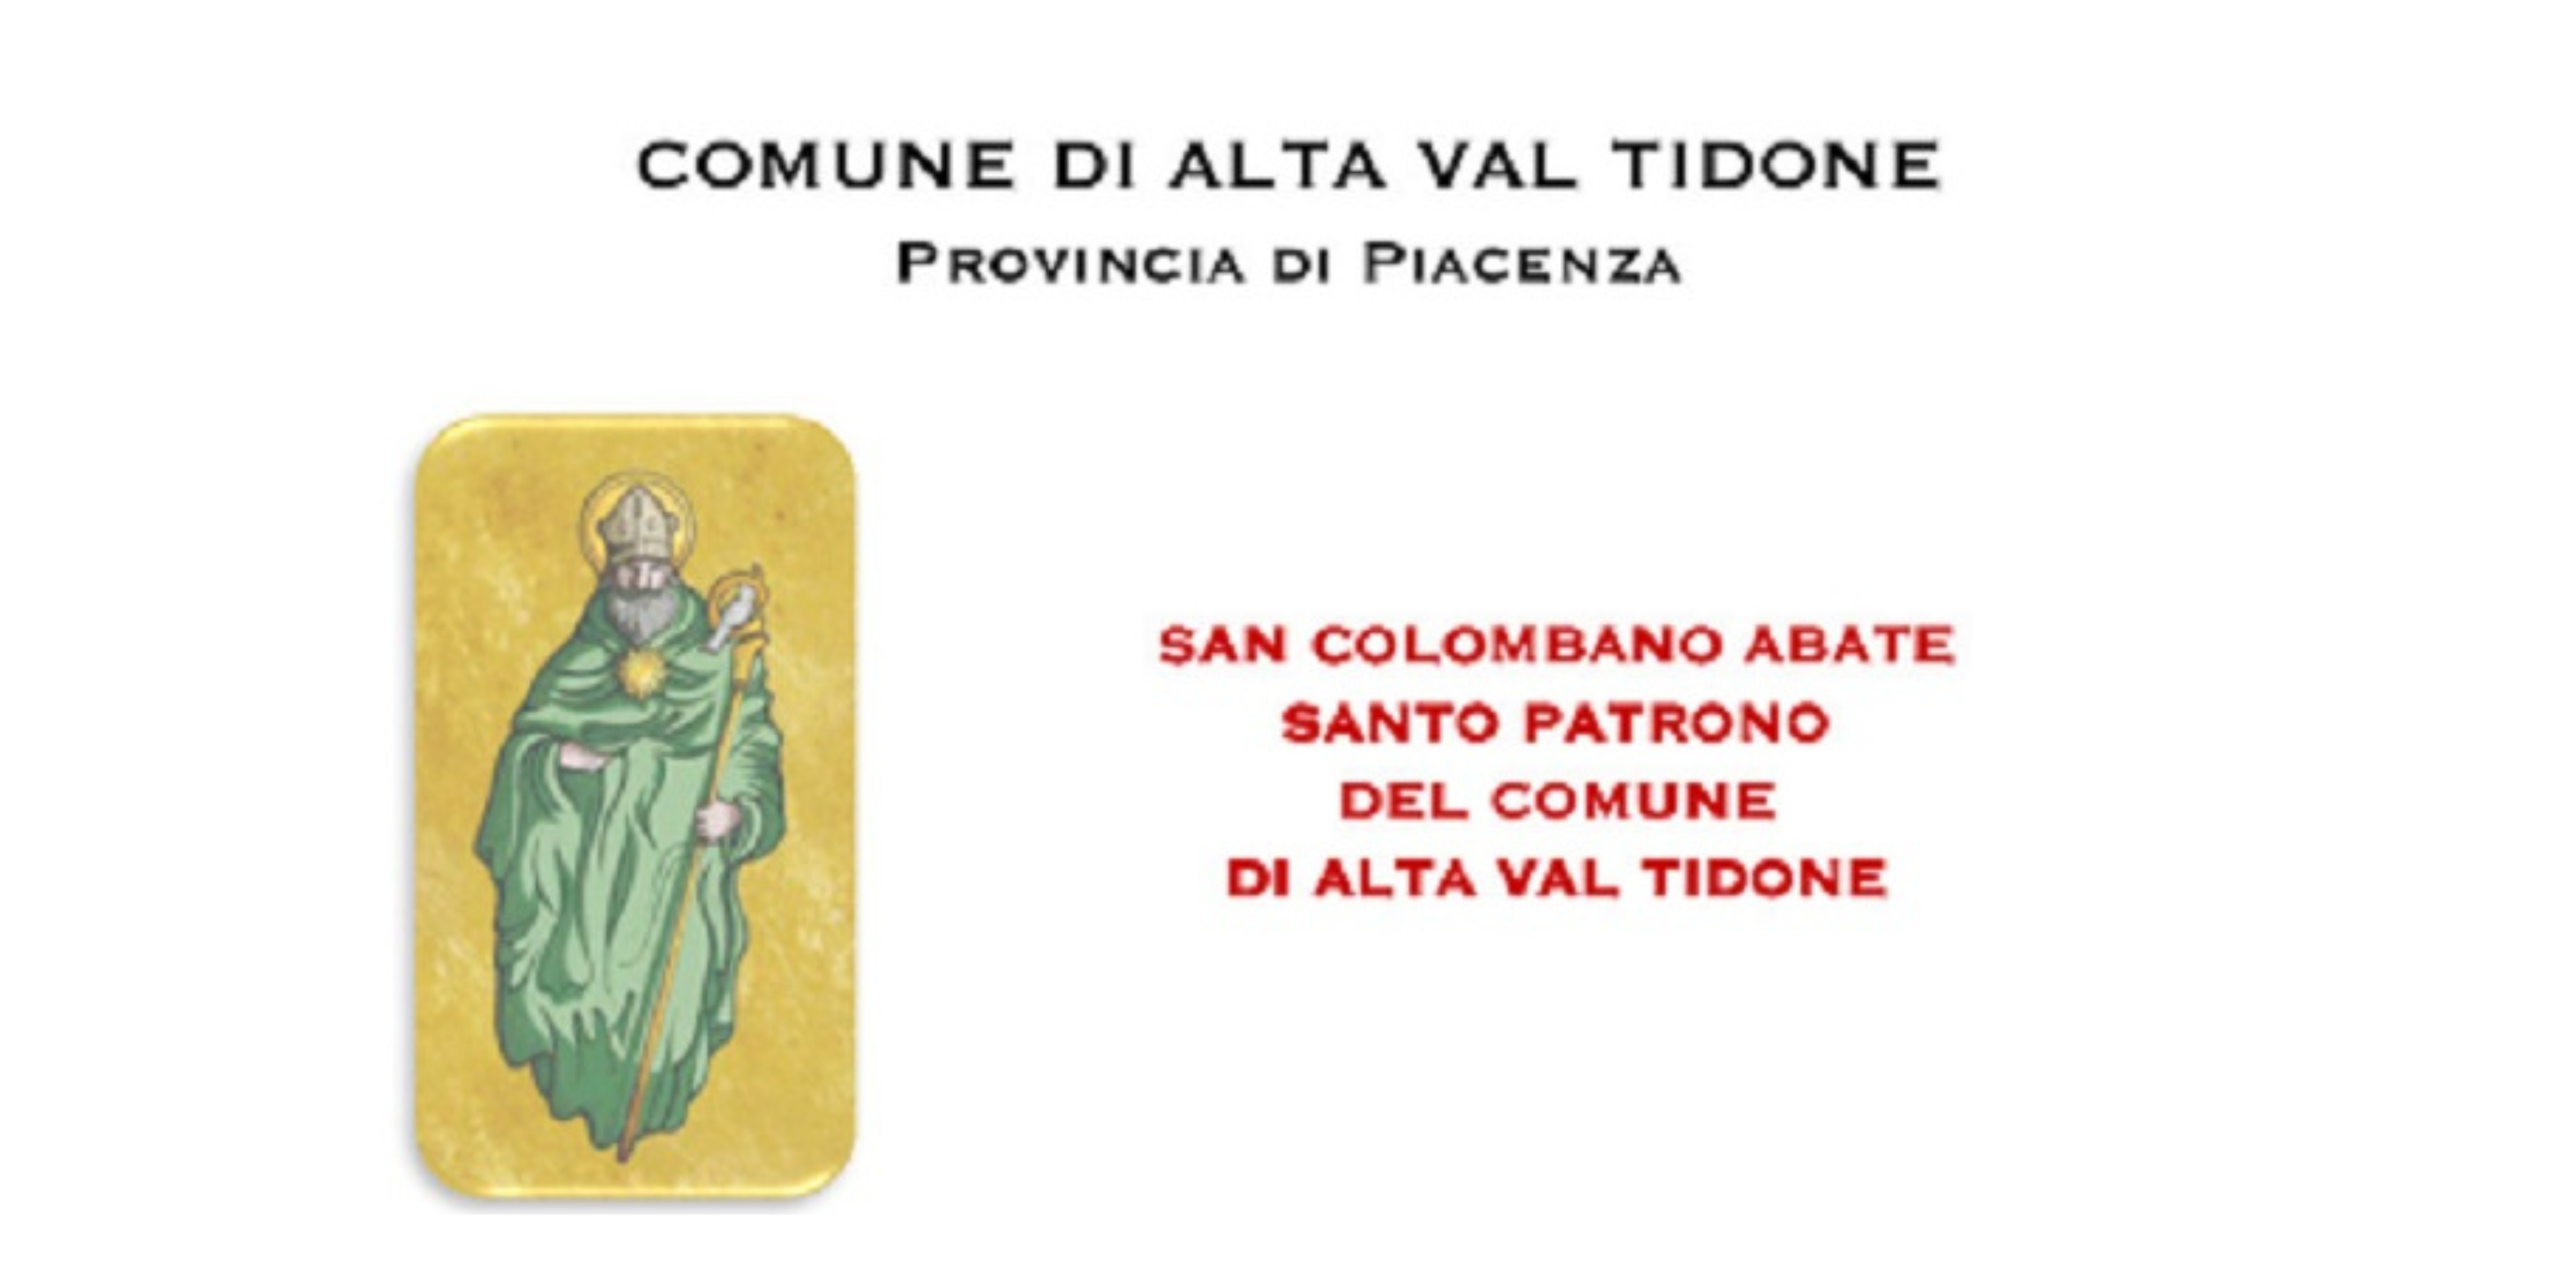 Giovedì 18 luglio Alta Val Tidone celebra il patrono San Colombano